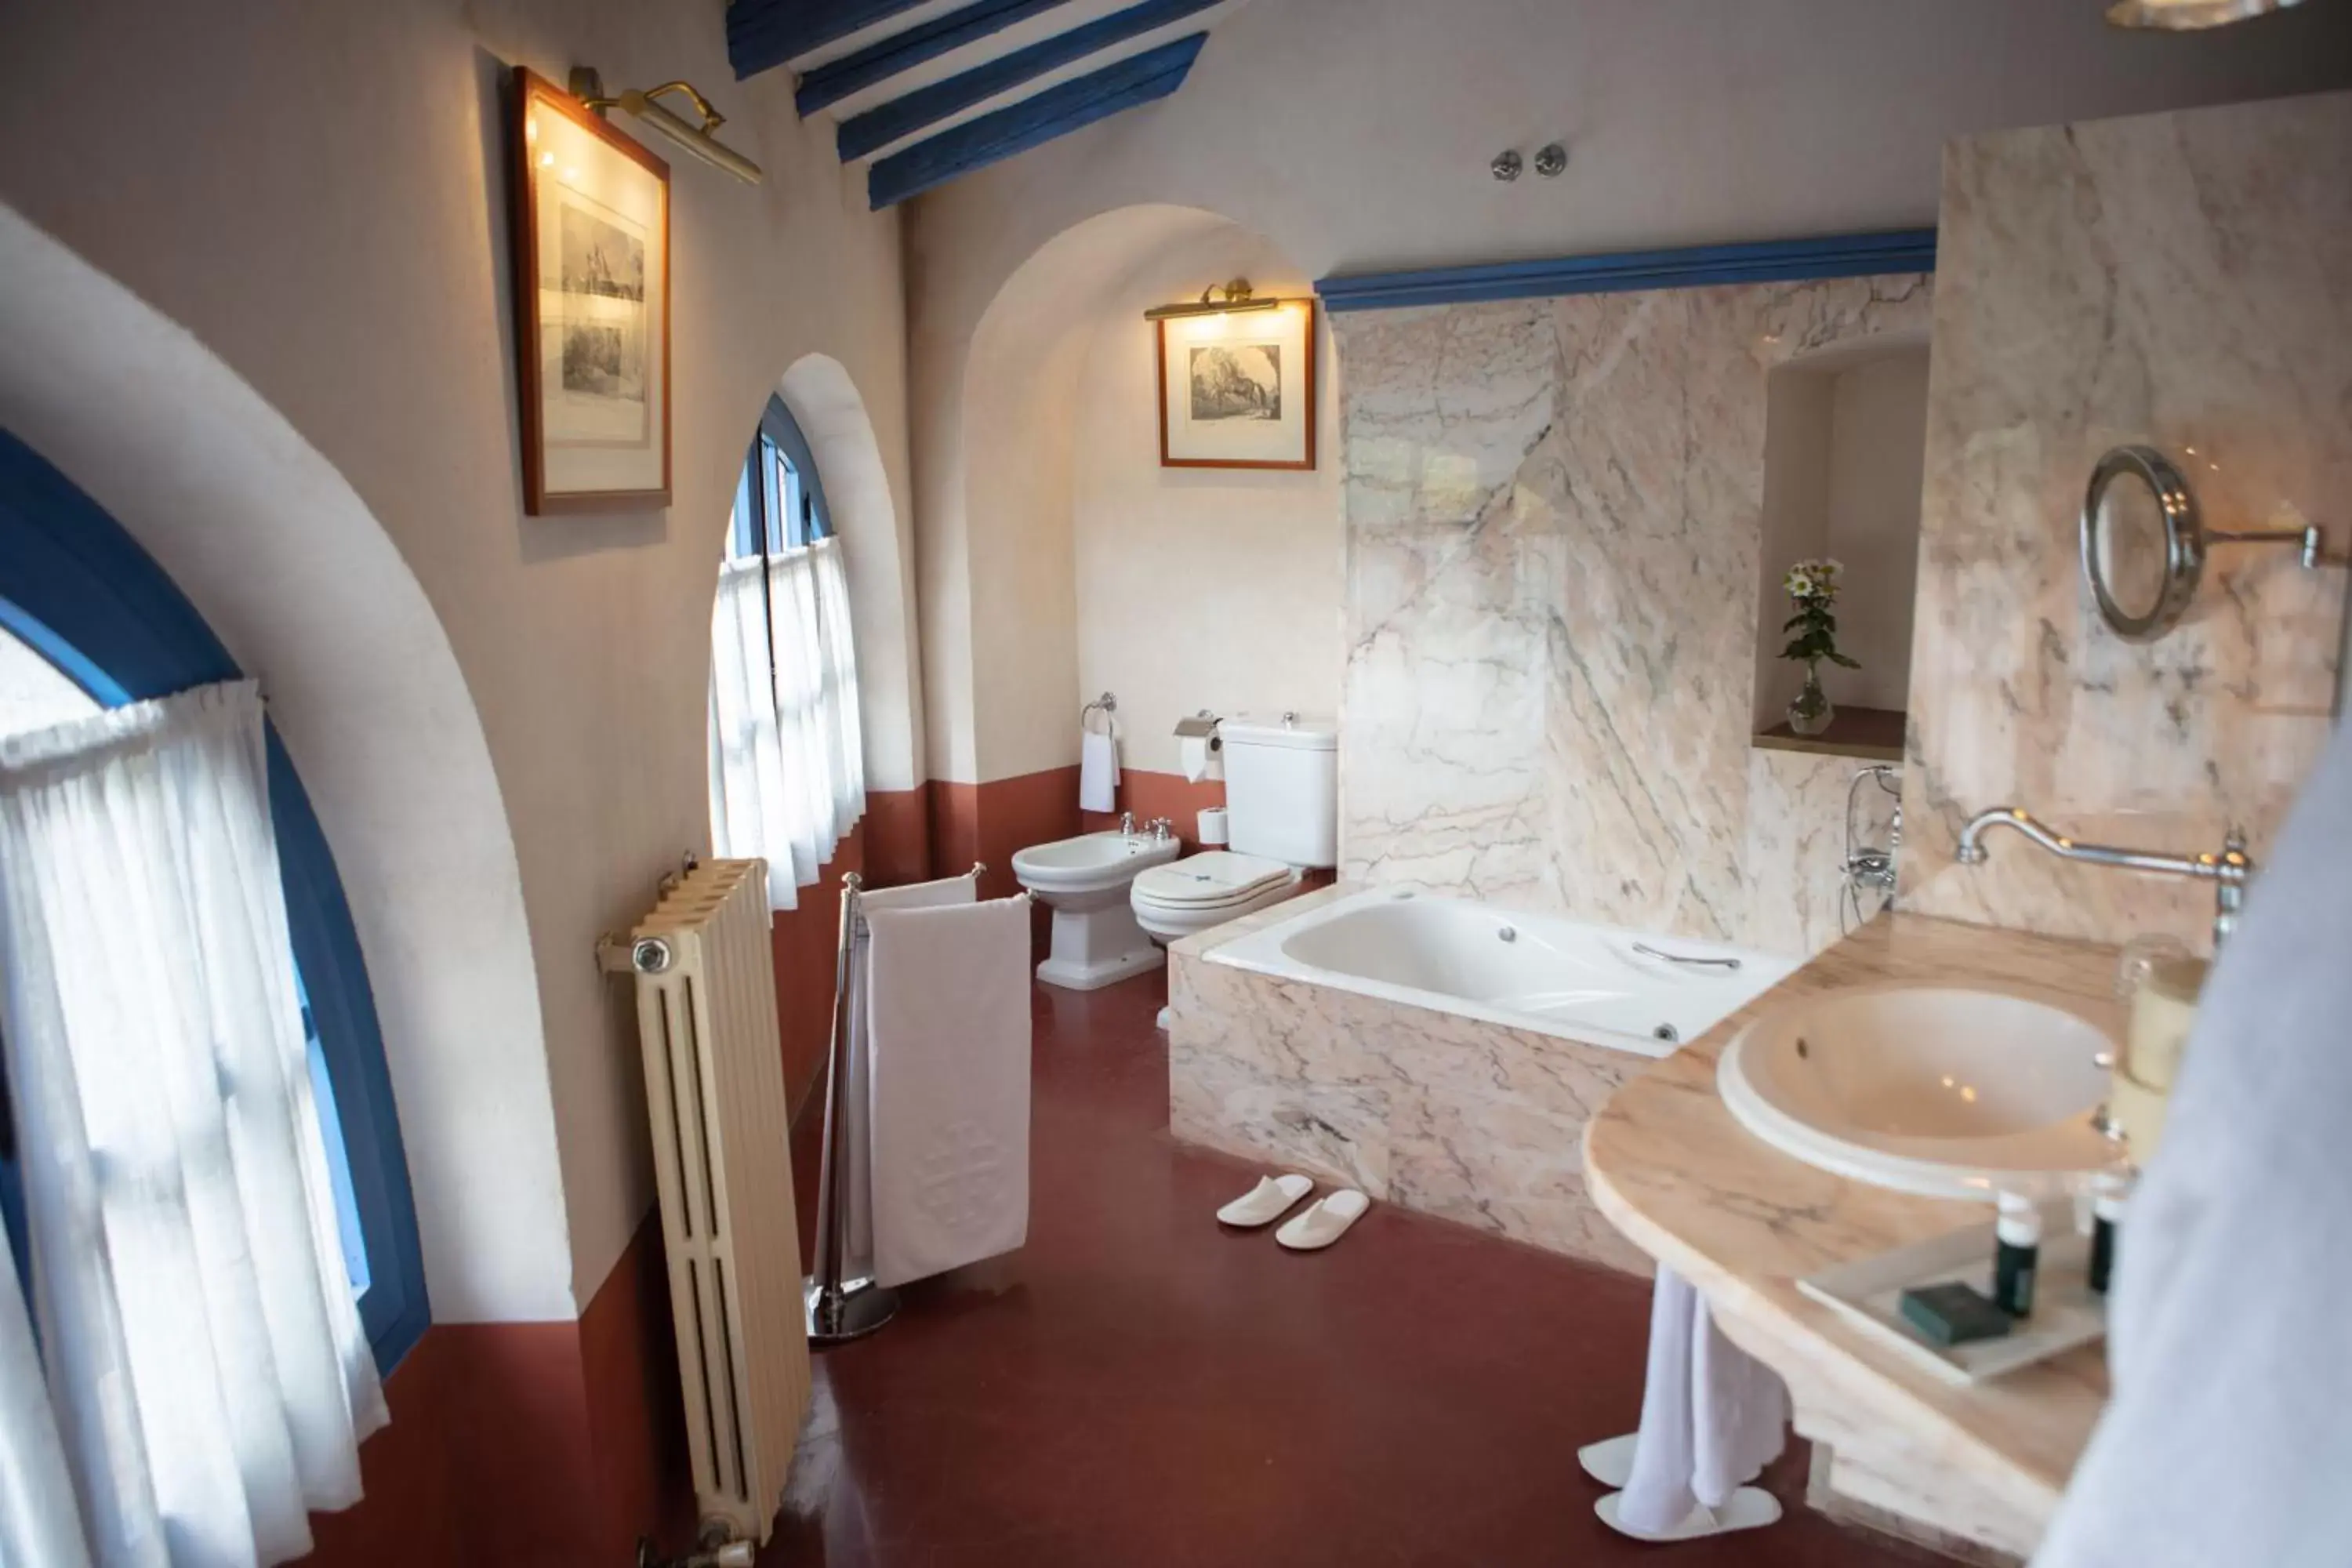 Toilet, Bathroom in Monasterio de San Francisco